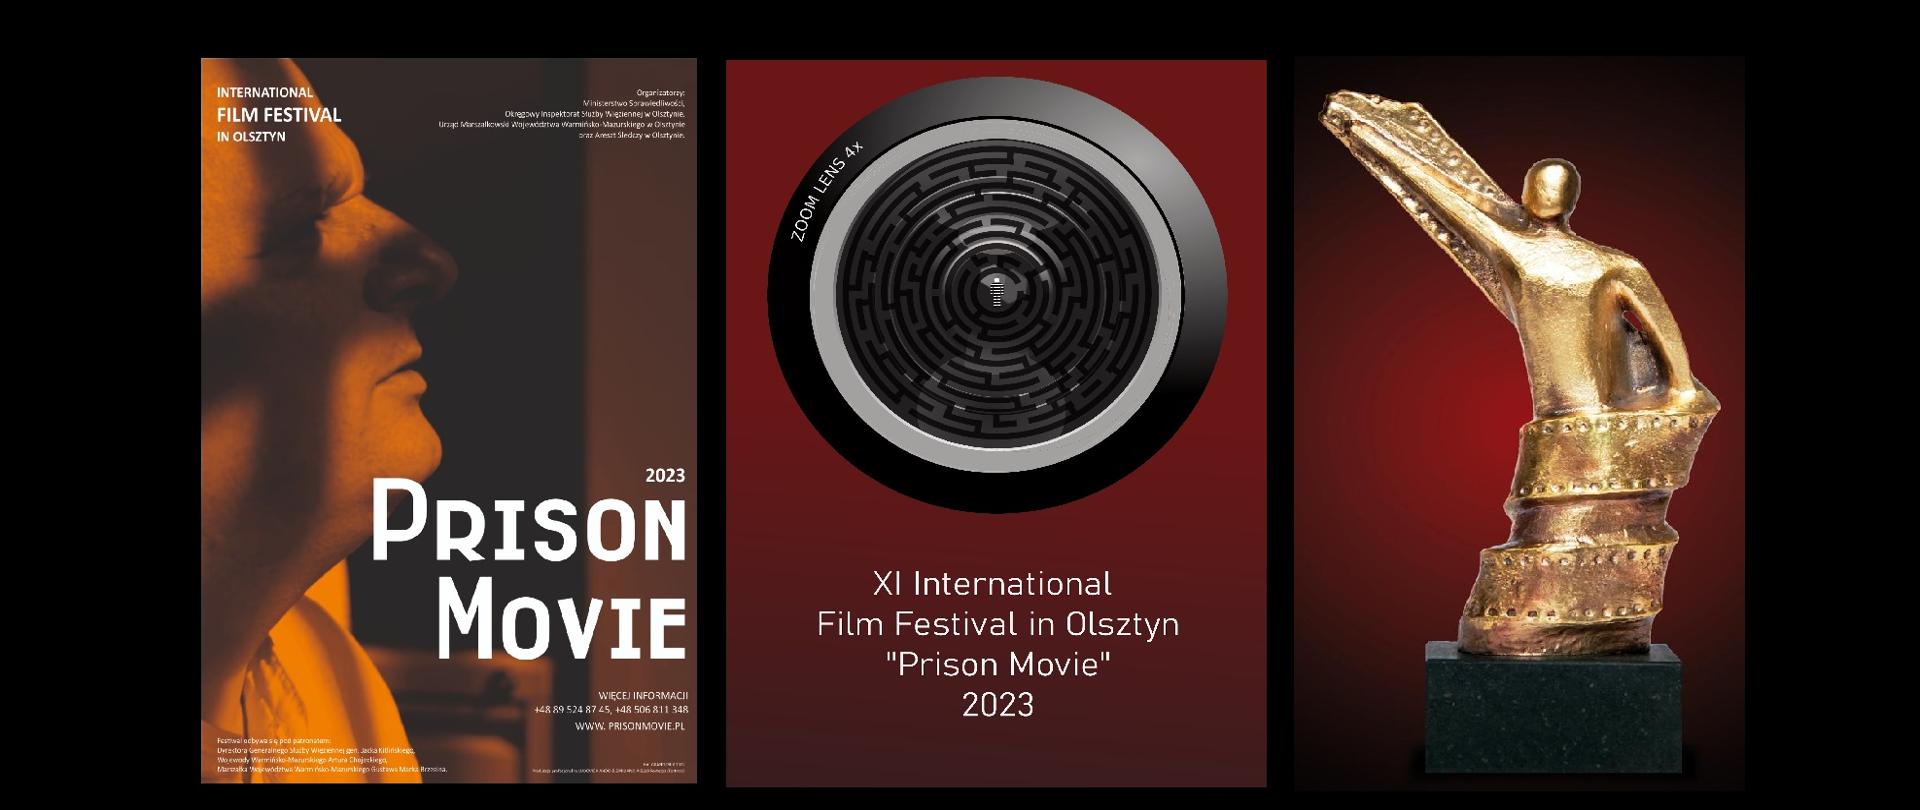 Po lewej stronie widać profil mężczyzny wraz z napisem 2023 Prison Movie. Po środku znajduje się obiektyw kamery z małą postacią oraz napis XI International Film Festival in Olsztyn Prison Movie 2023. Po prawej stronie widać statuetkę. 